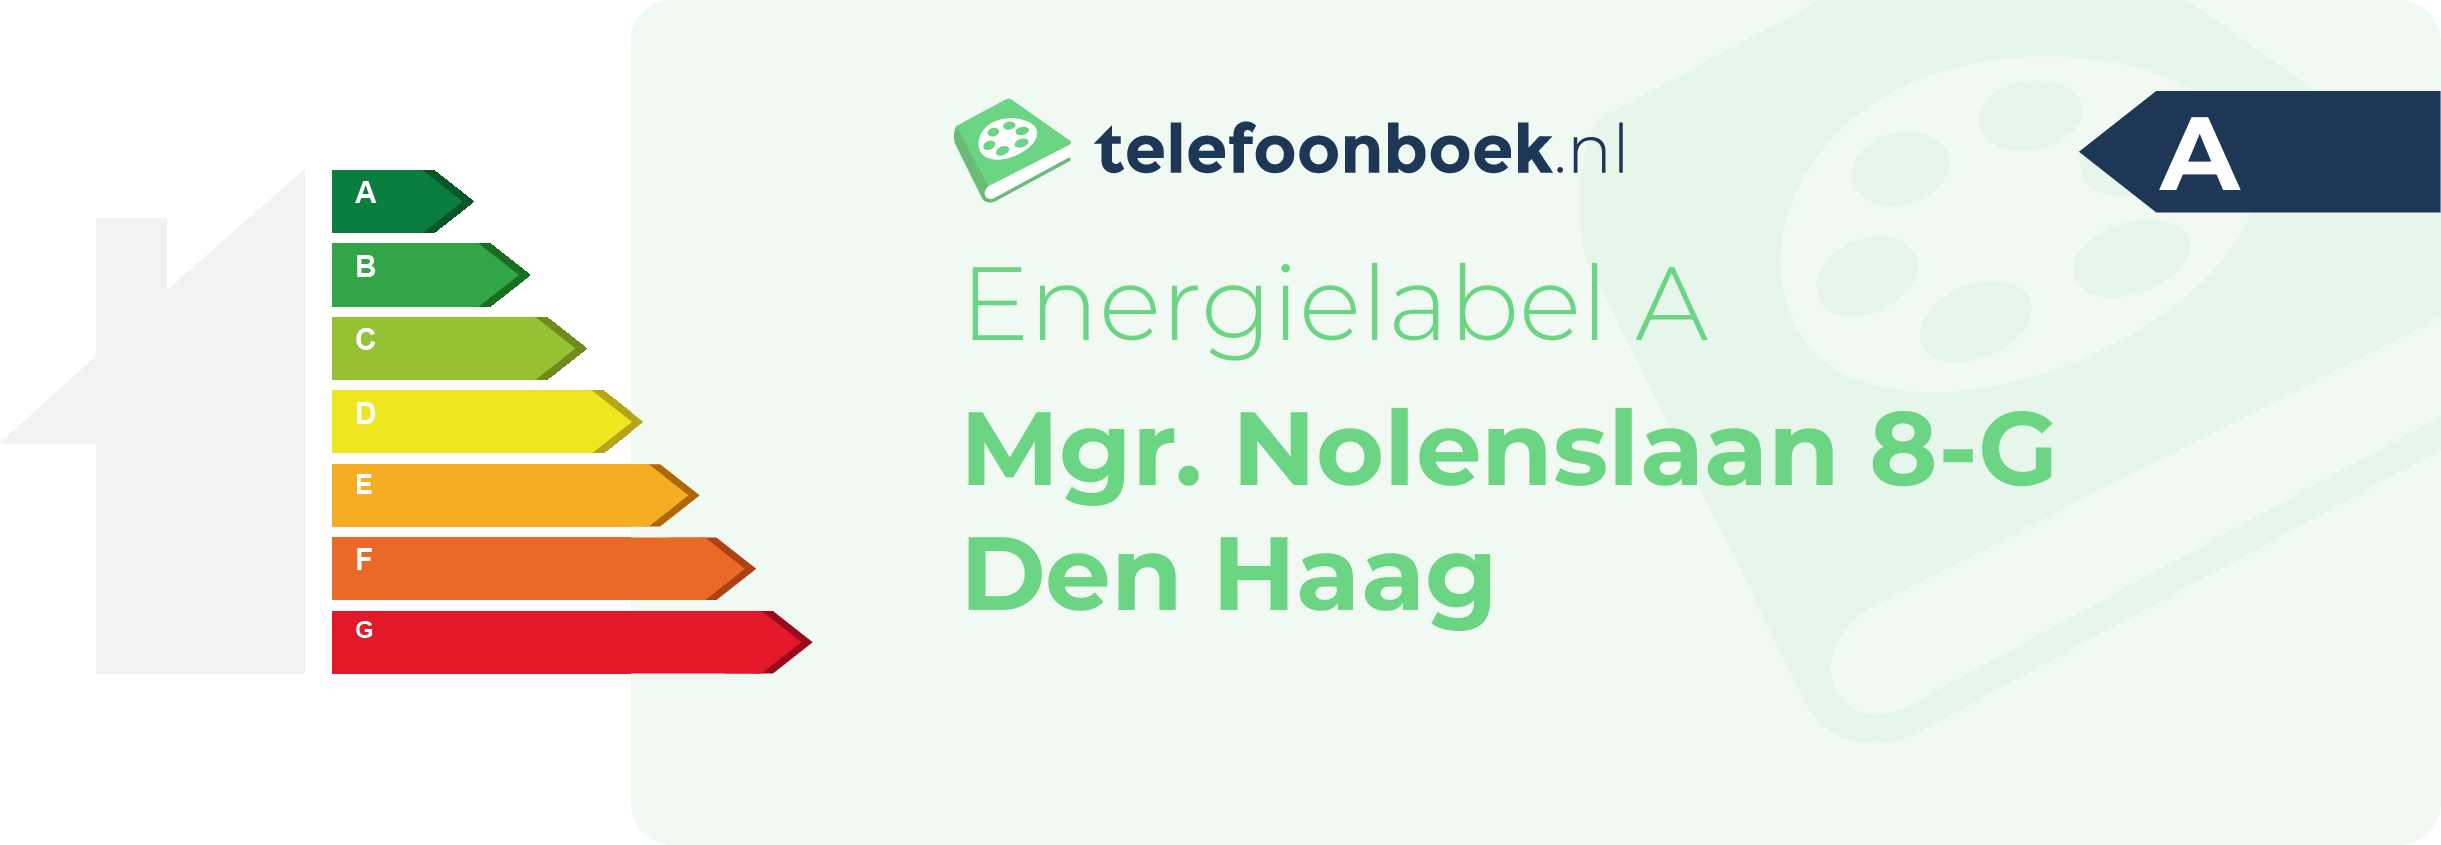 Energielabel Mgr. Nolenslaan 8-G Den Haag